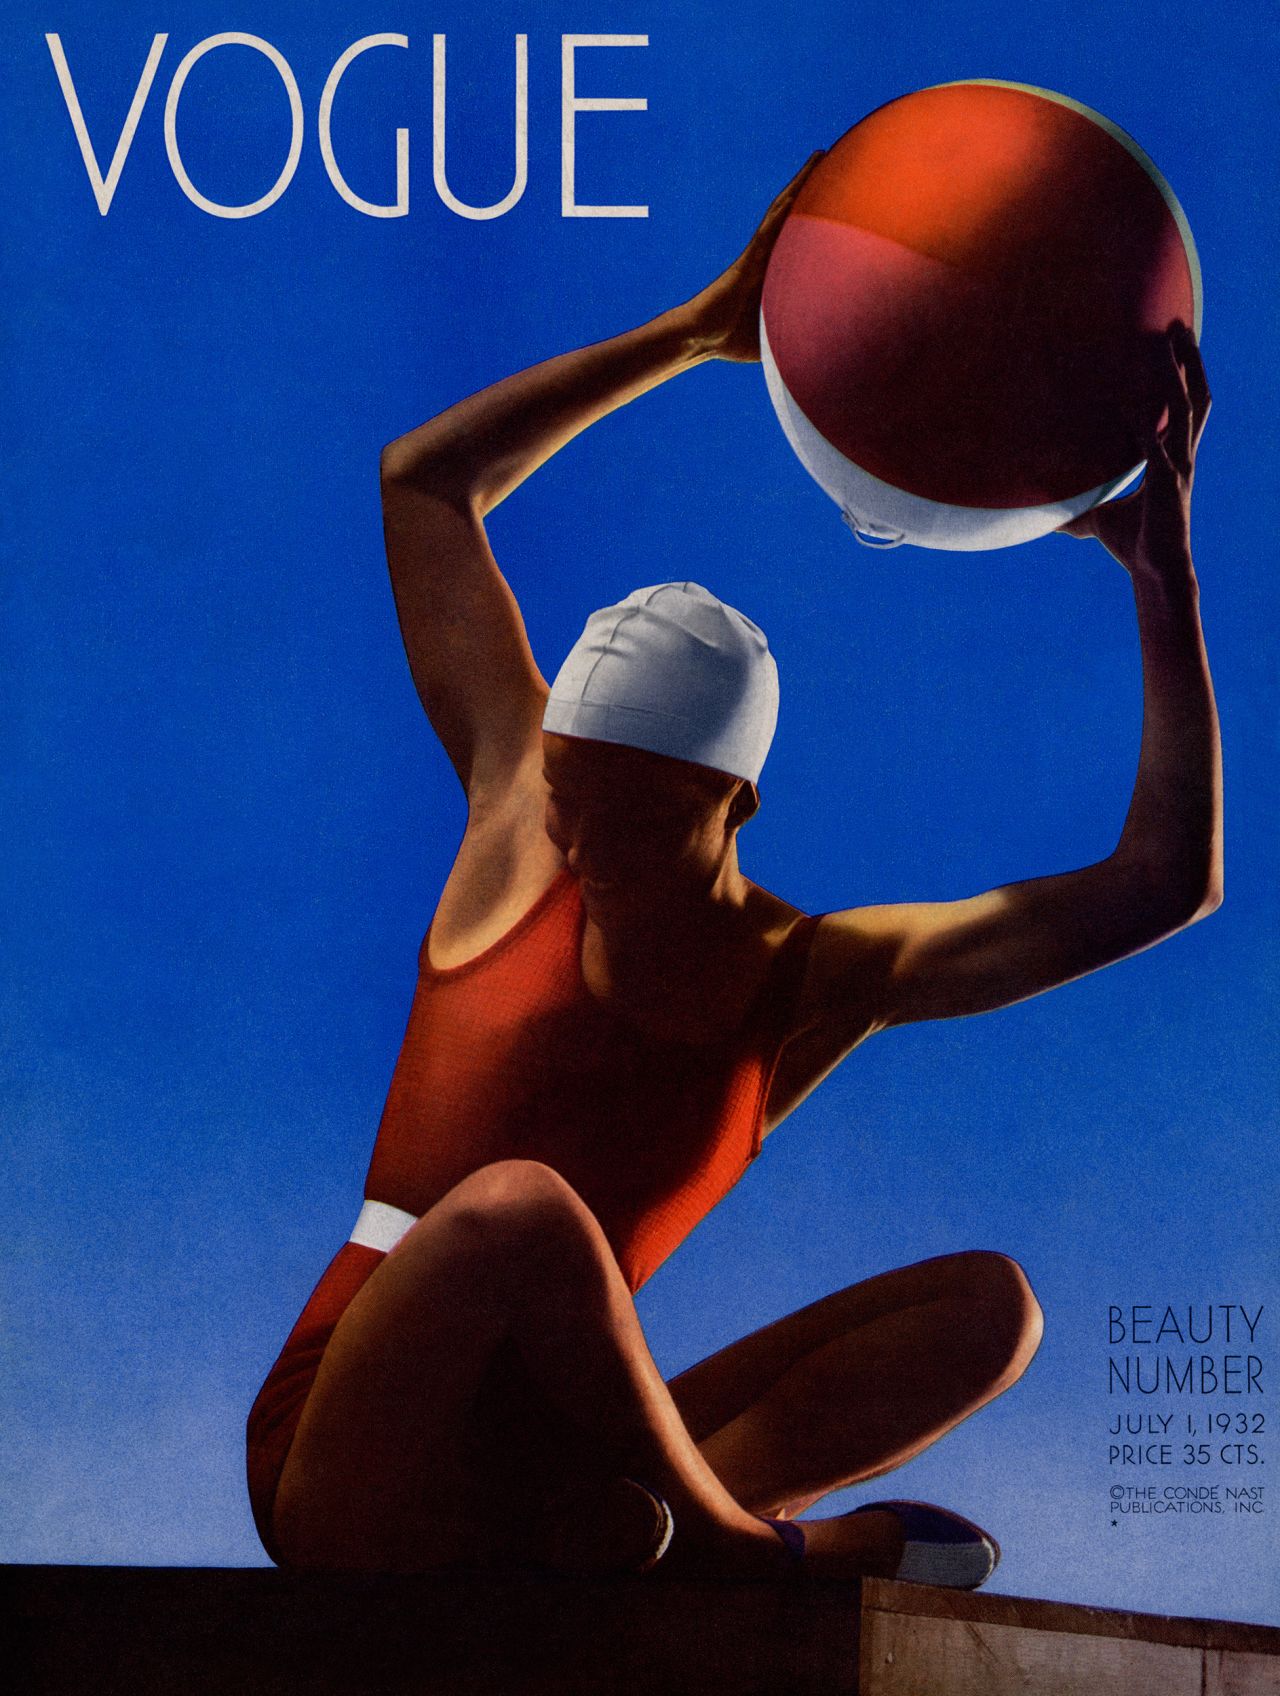 Vogue cover by Edward Steichen (1932)